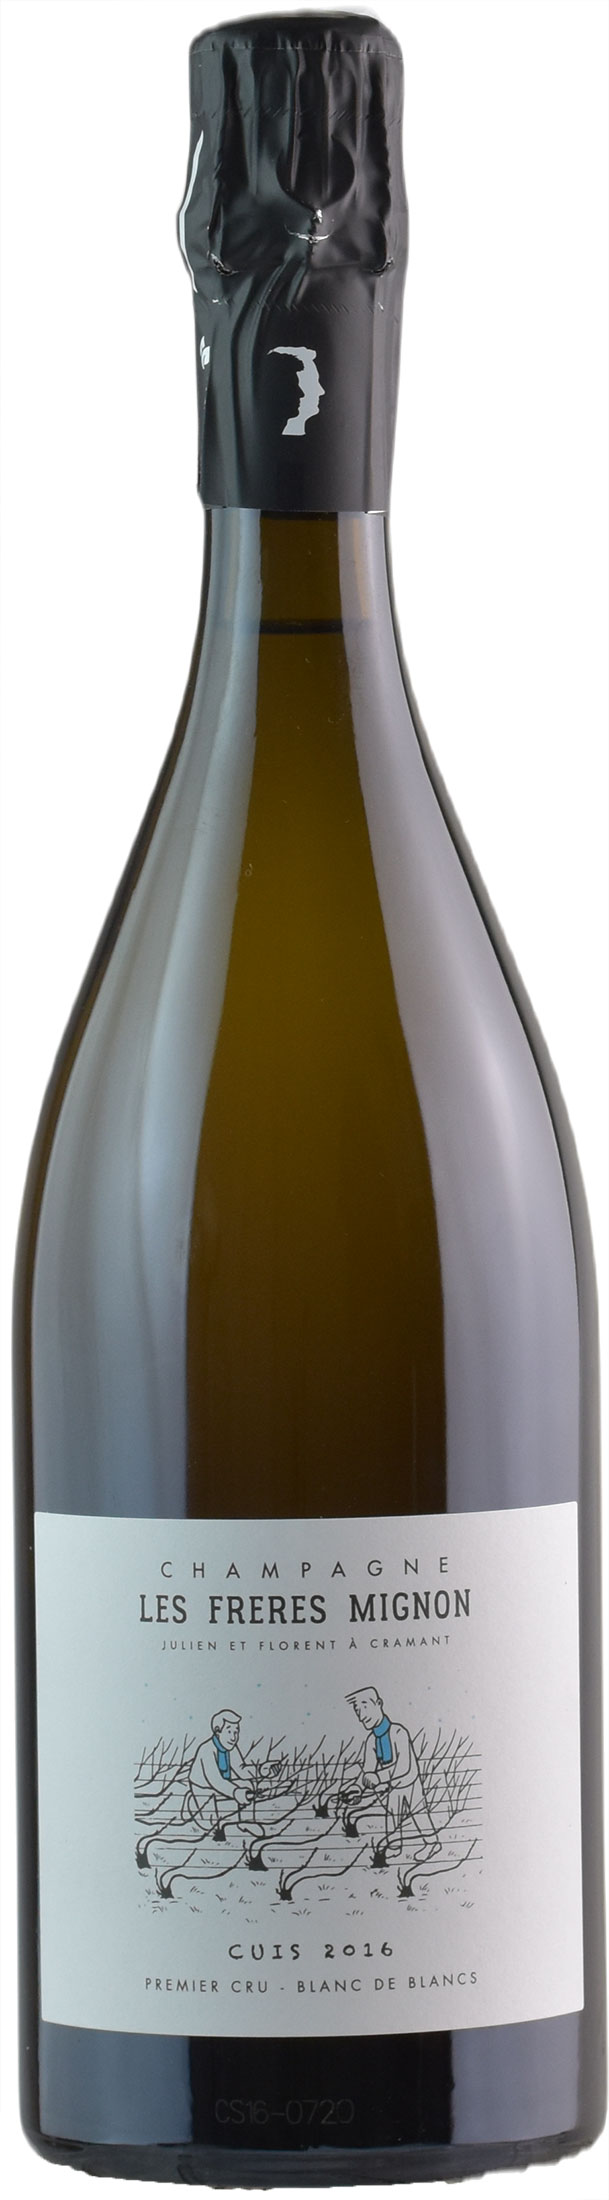 Les Freres Mignon Champagne Terroir de Cuis Blanc de Blancs Extra Brut Millesime 2016